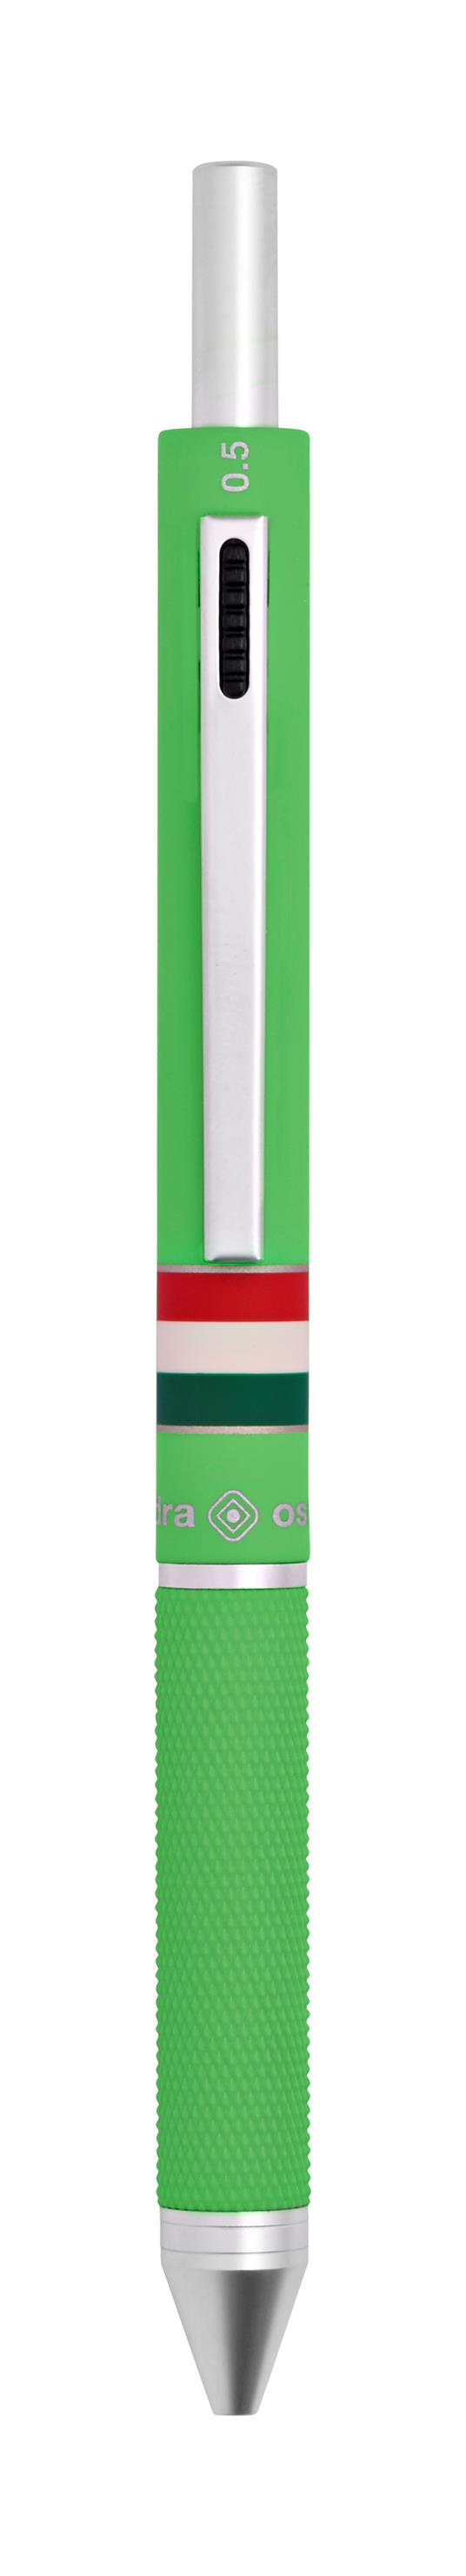 Penna a sfera 4 funzioni Quadra Italia Gommata Verde Chiaro - 3